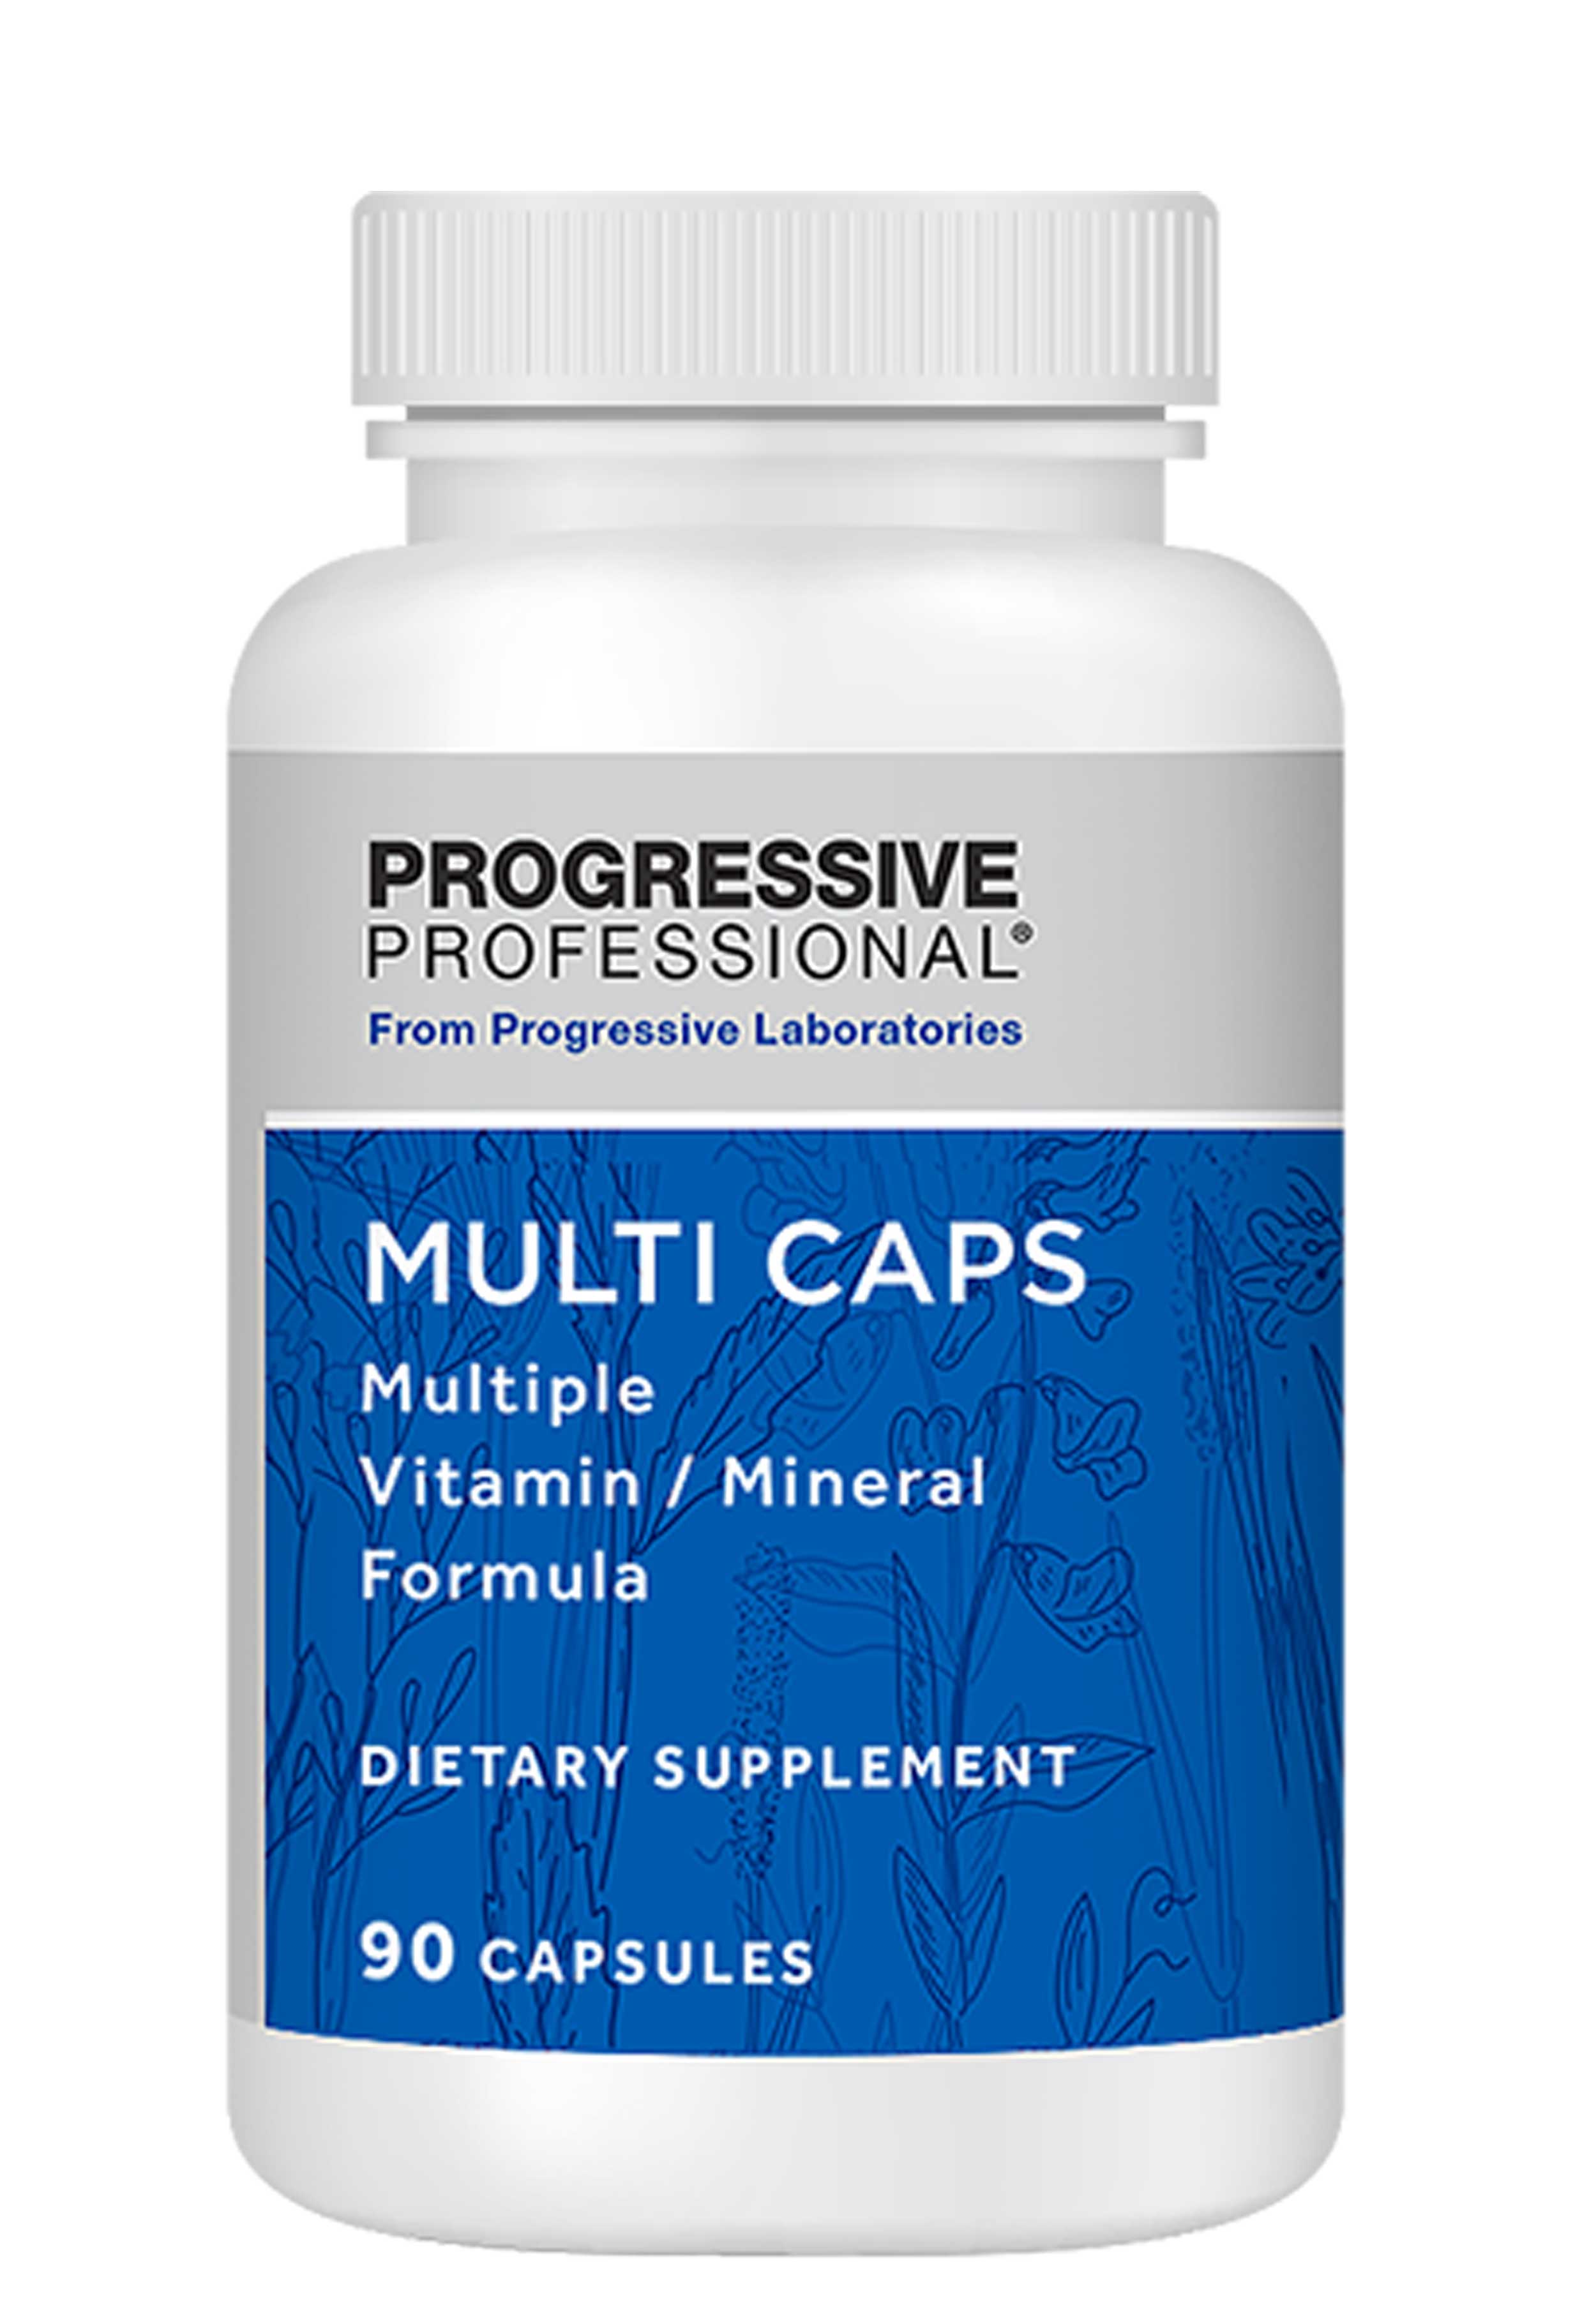 Progressive Laboratories Multi Caps